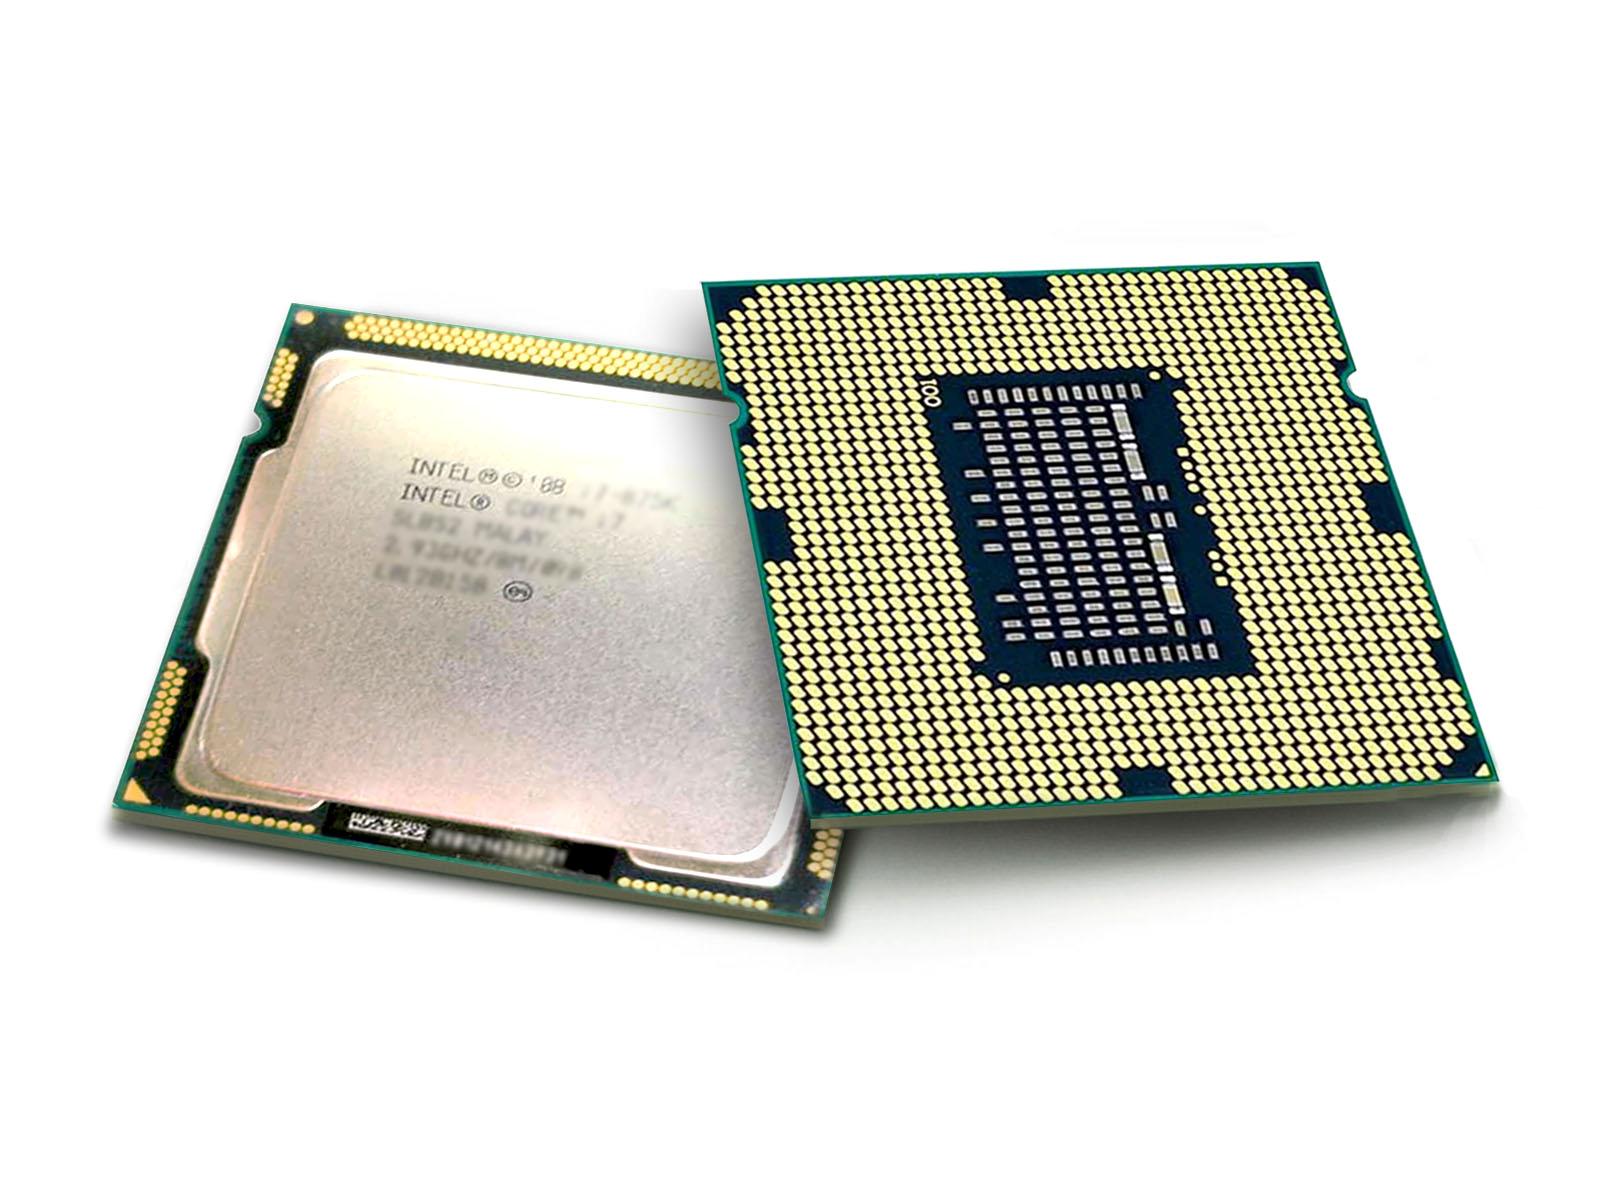 Intel Core i5-661 cpu